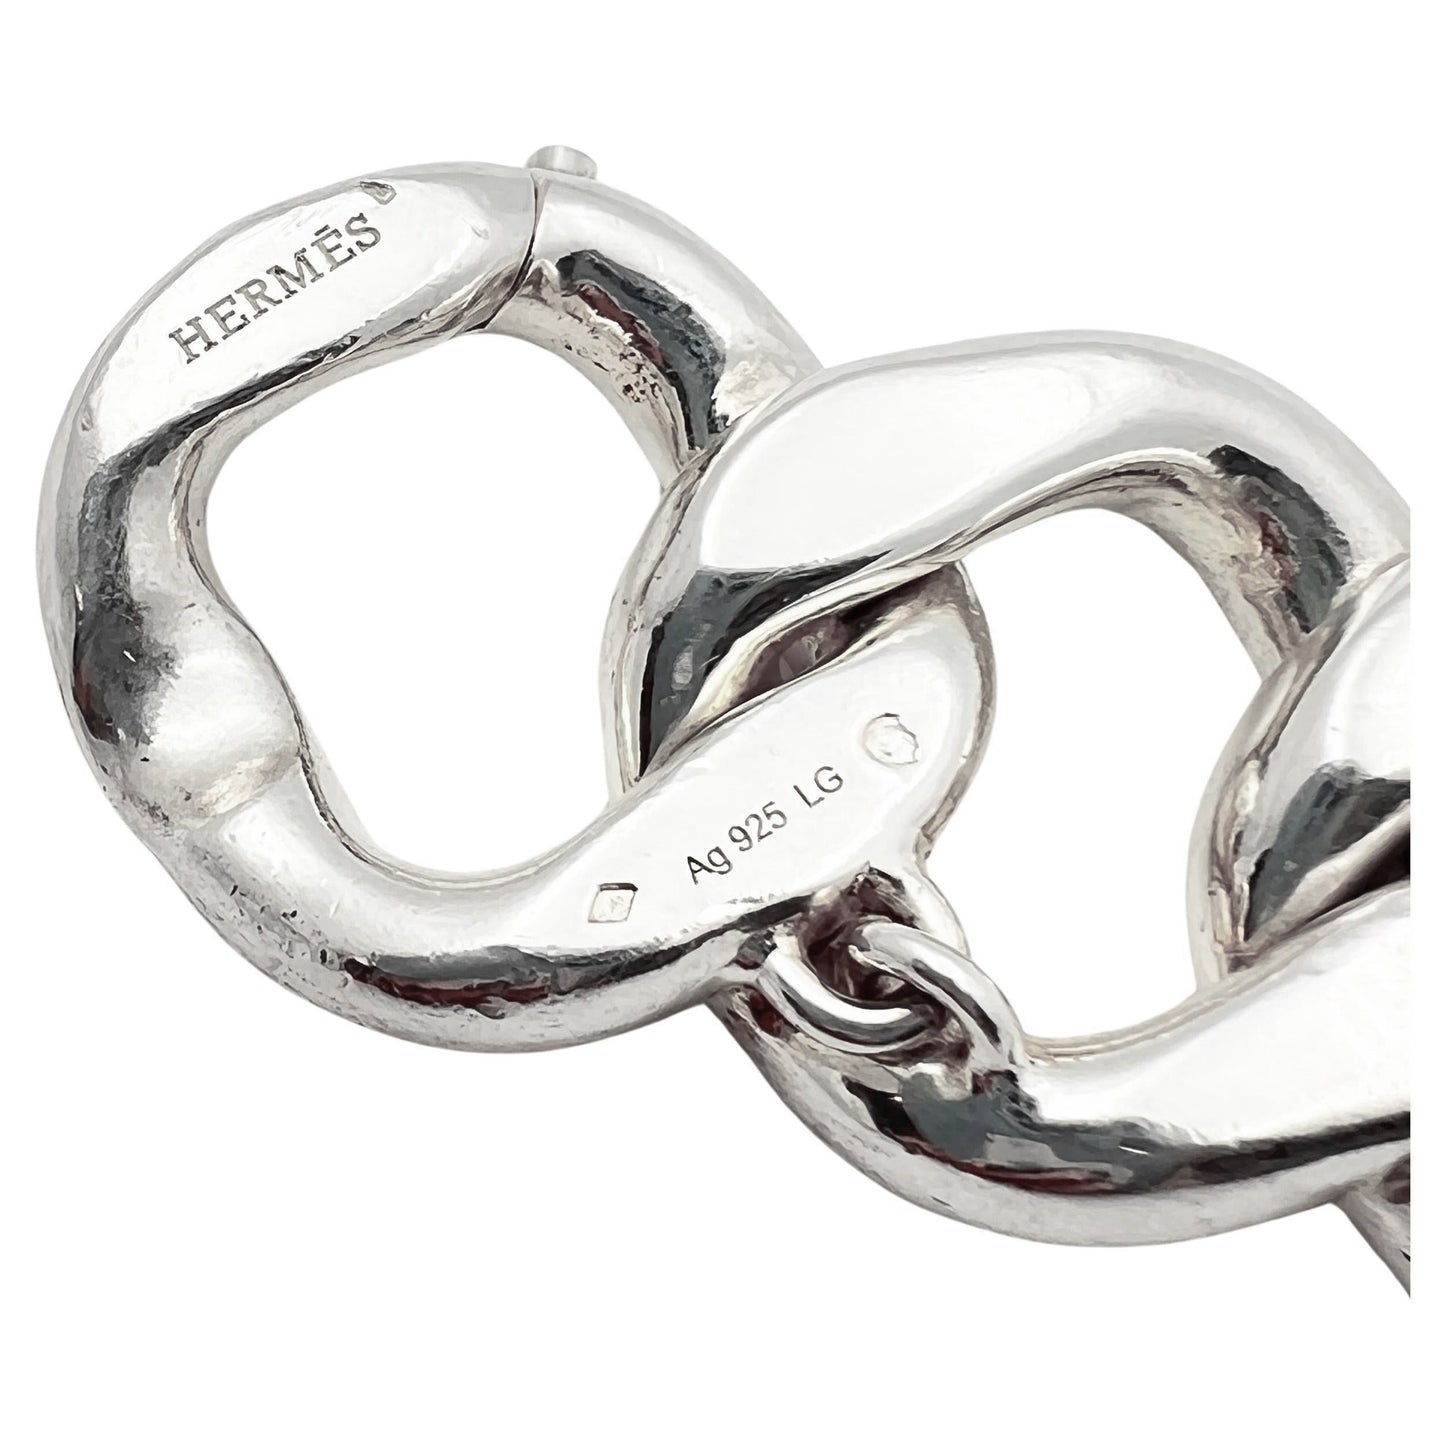 Hermes - Sterling Silver Agora Curb-Link Bracelet